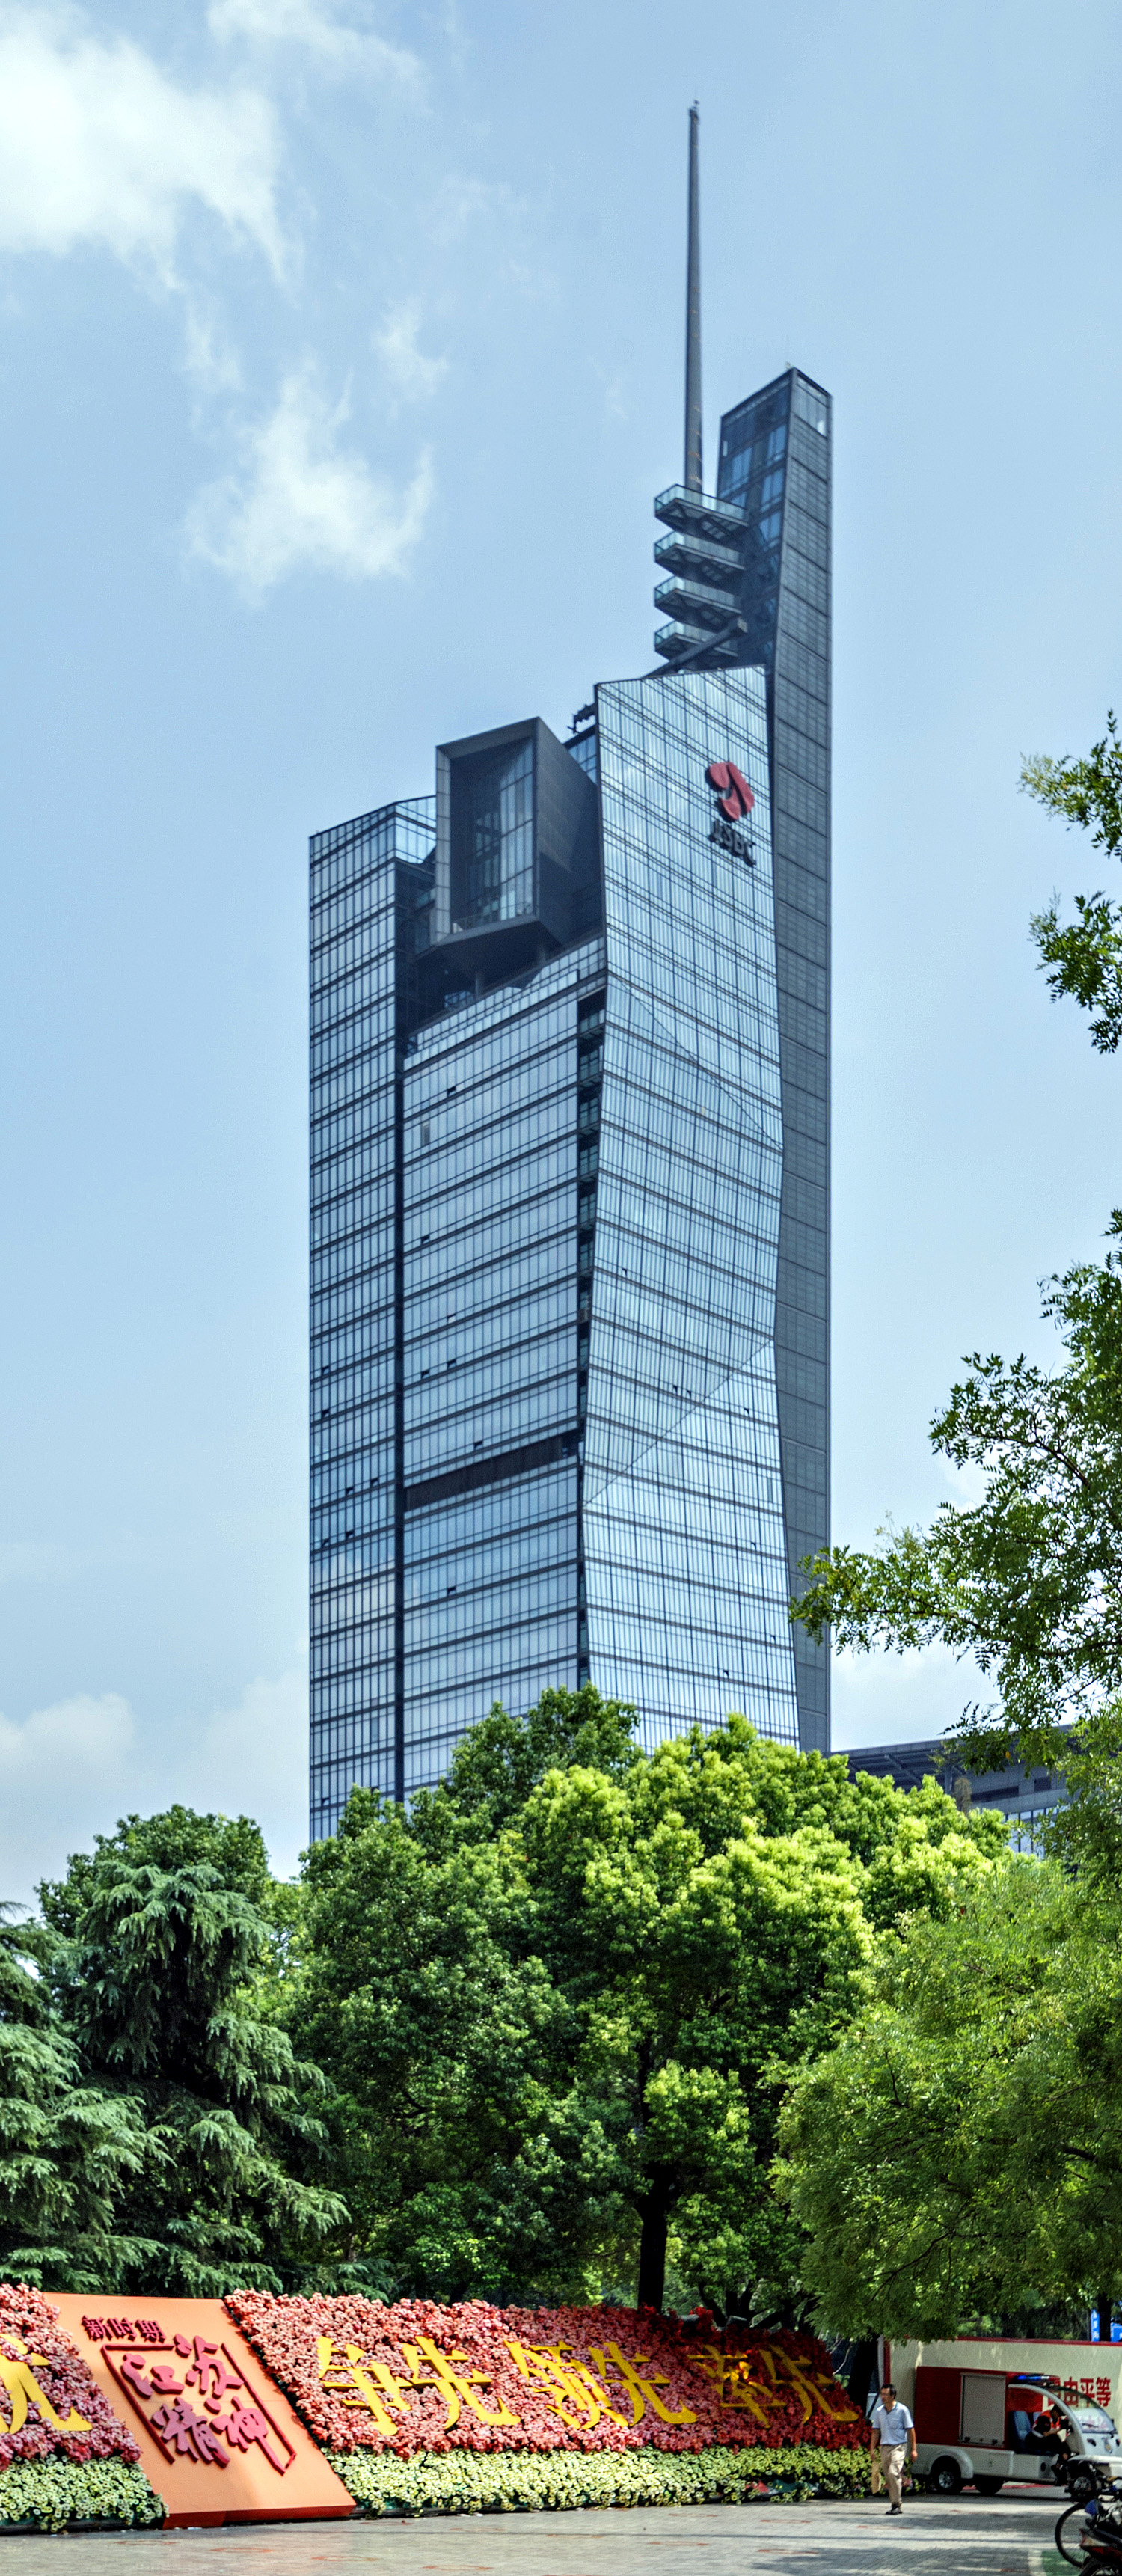 Jiangsu TV Station Building, Nanjing - View from the northwest. © Mathias Beinling